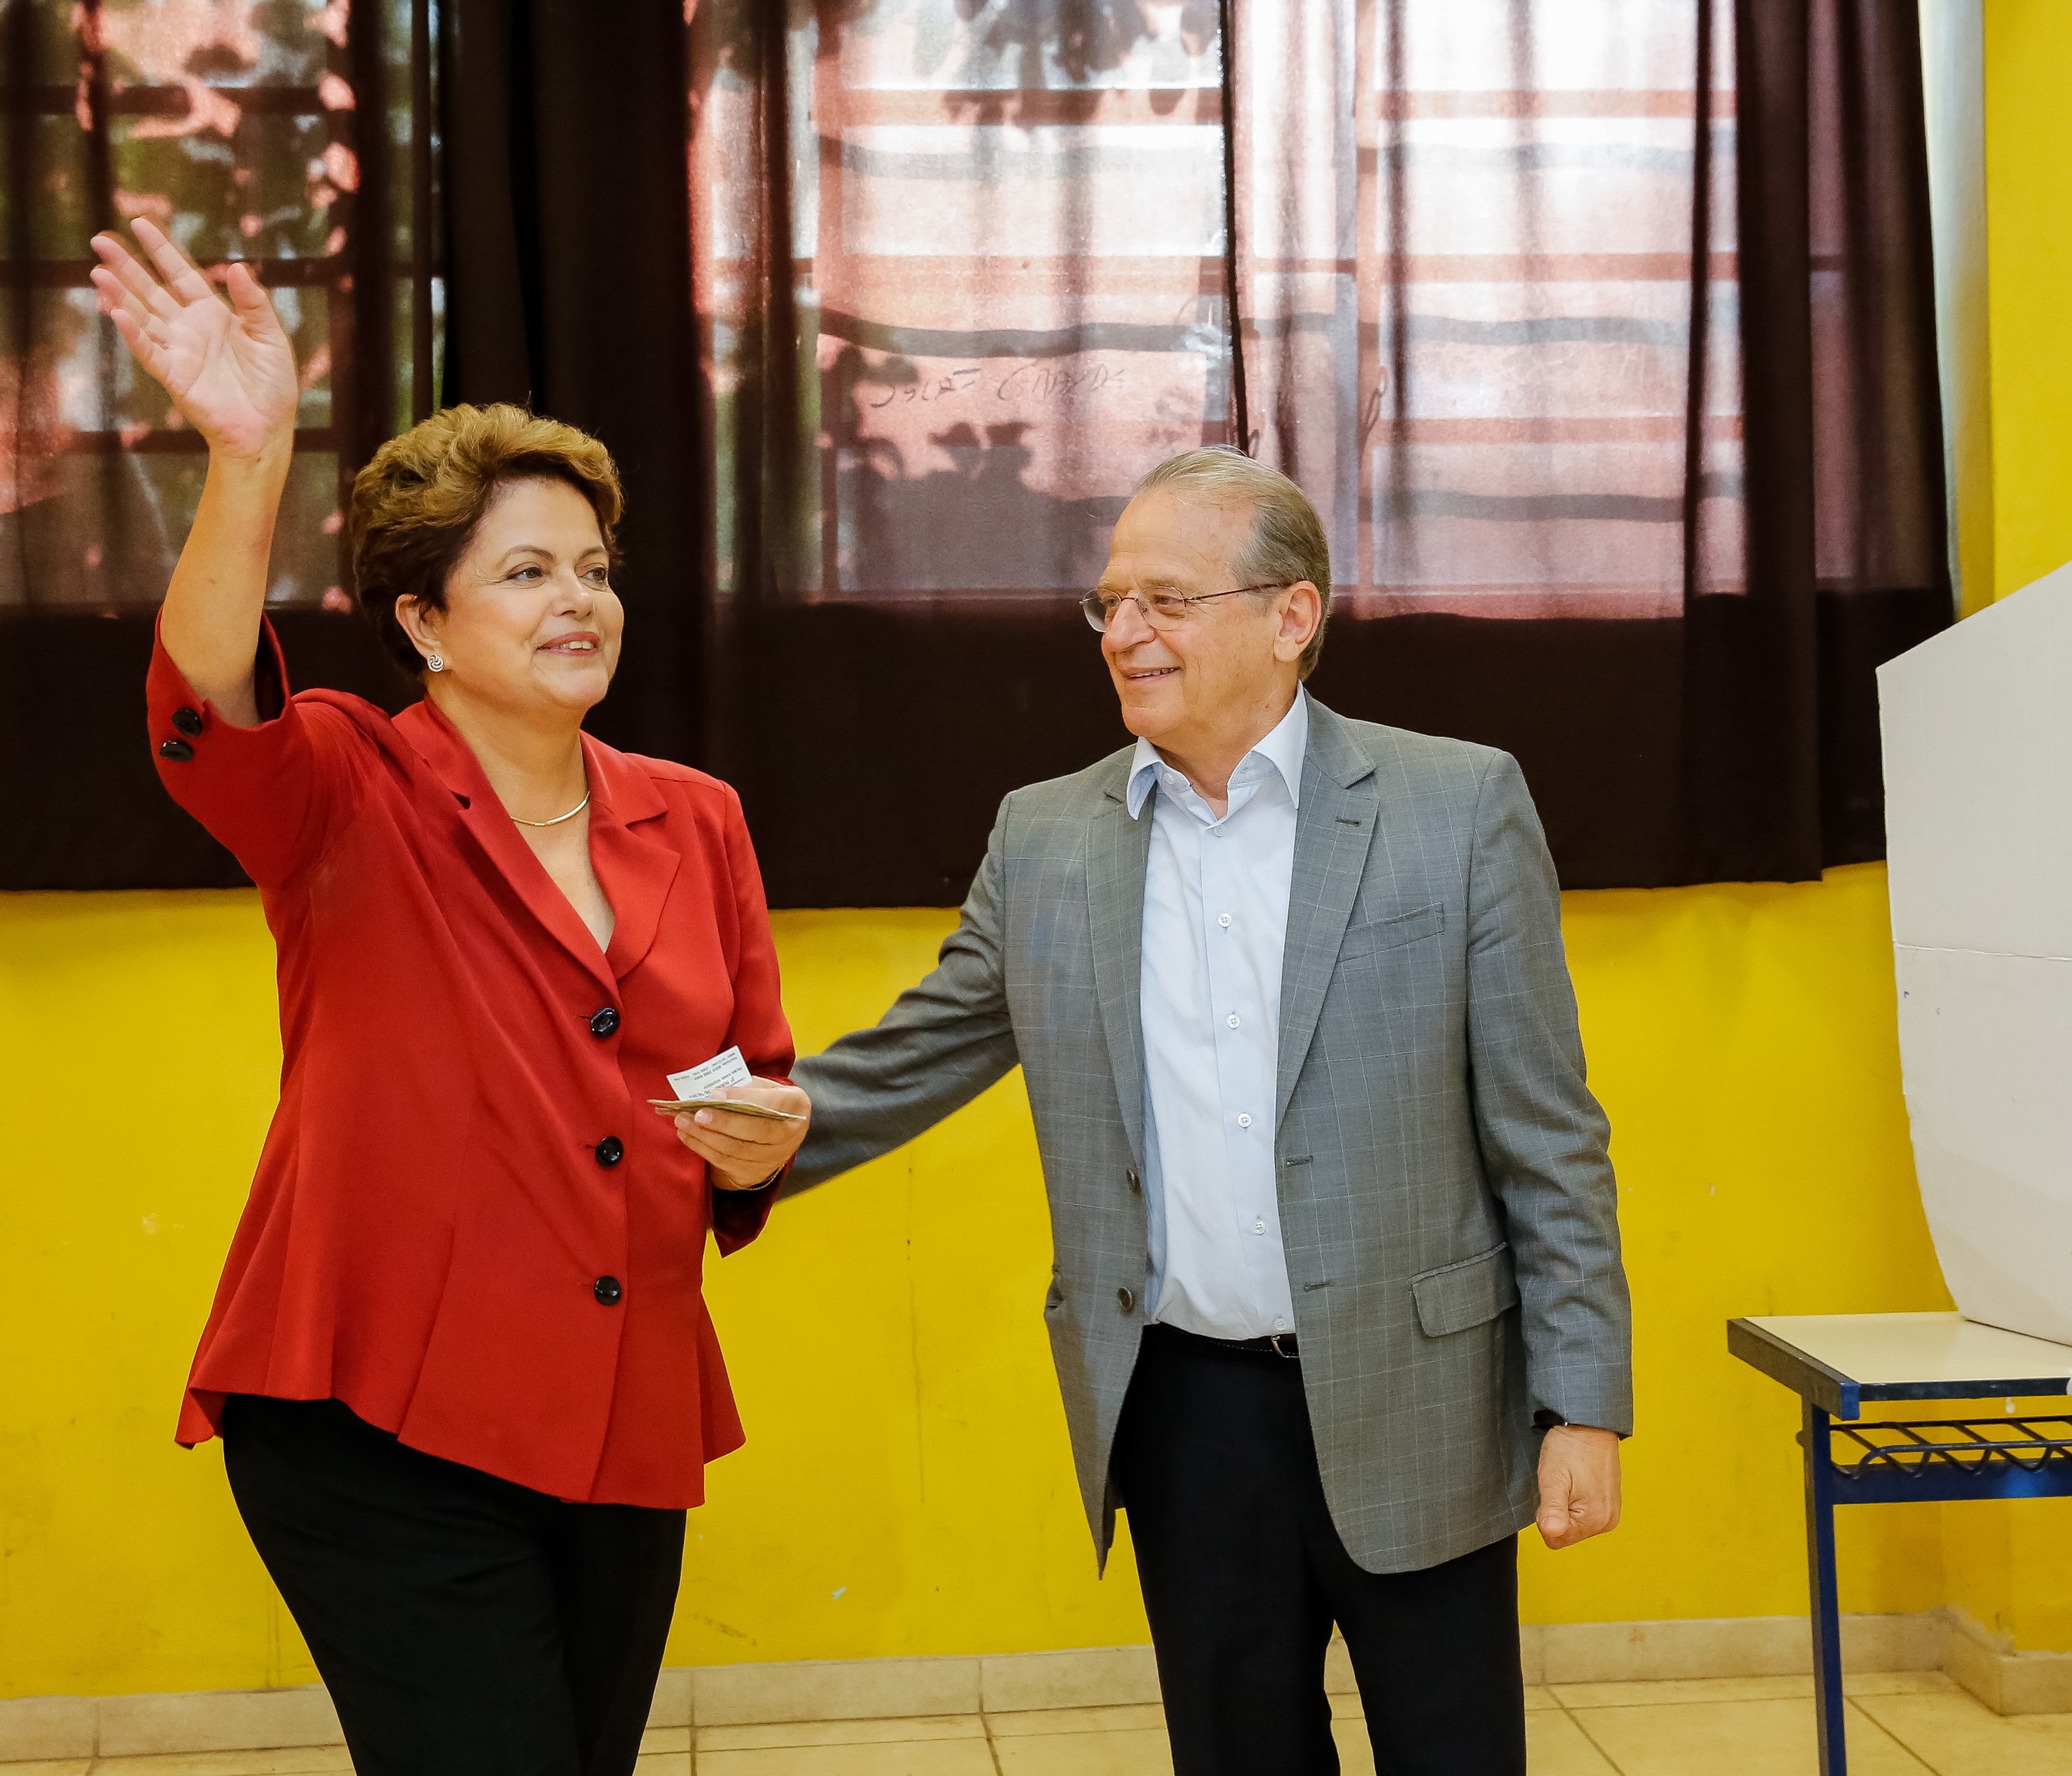 “Não vamos permitir que crise ou pessimismo tire o que conquistamos”, diz Dilma no RS